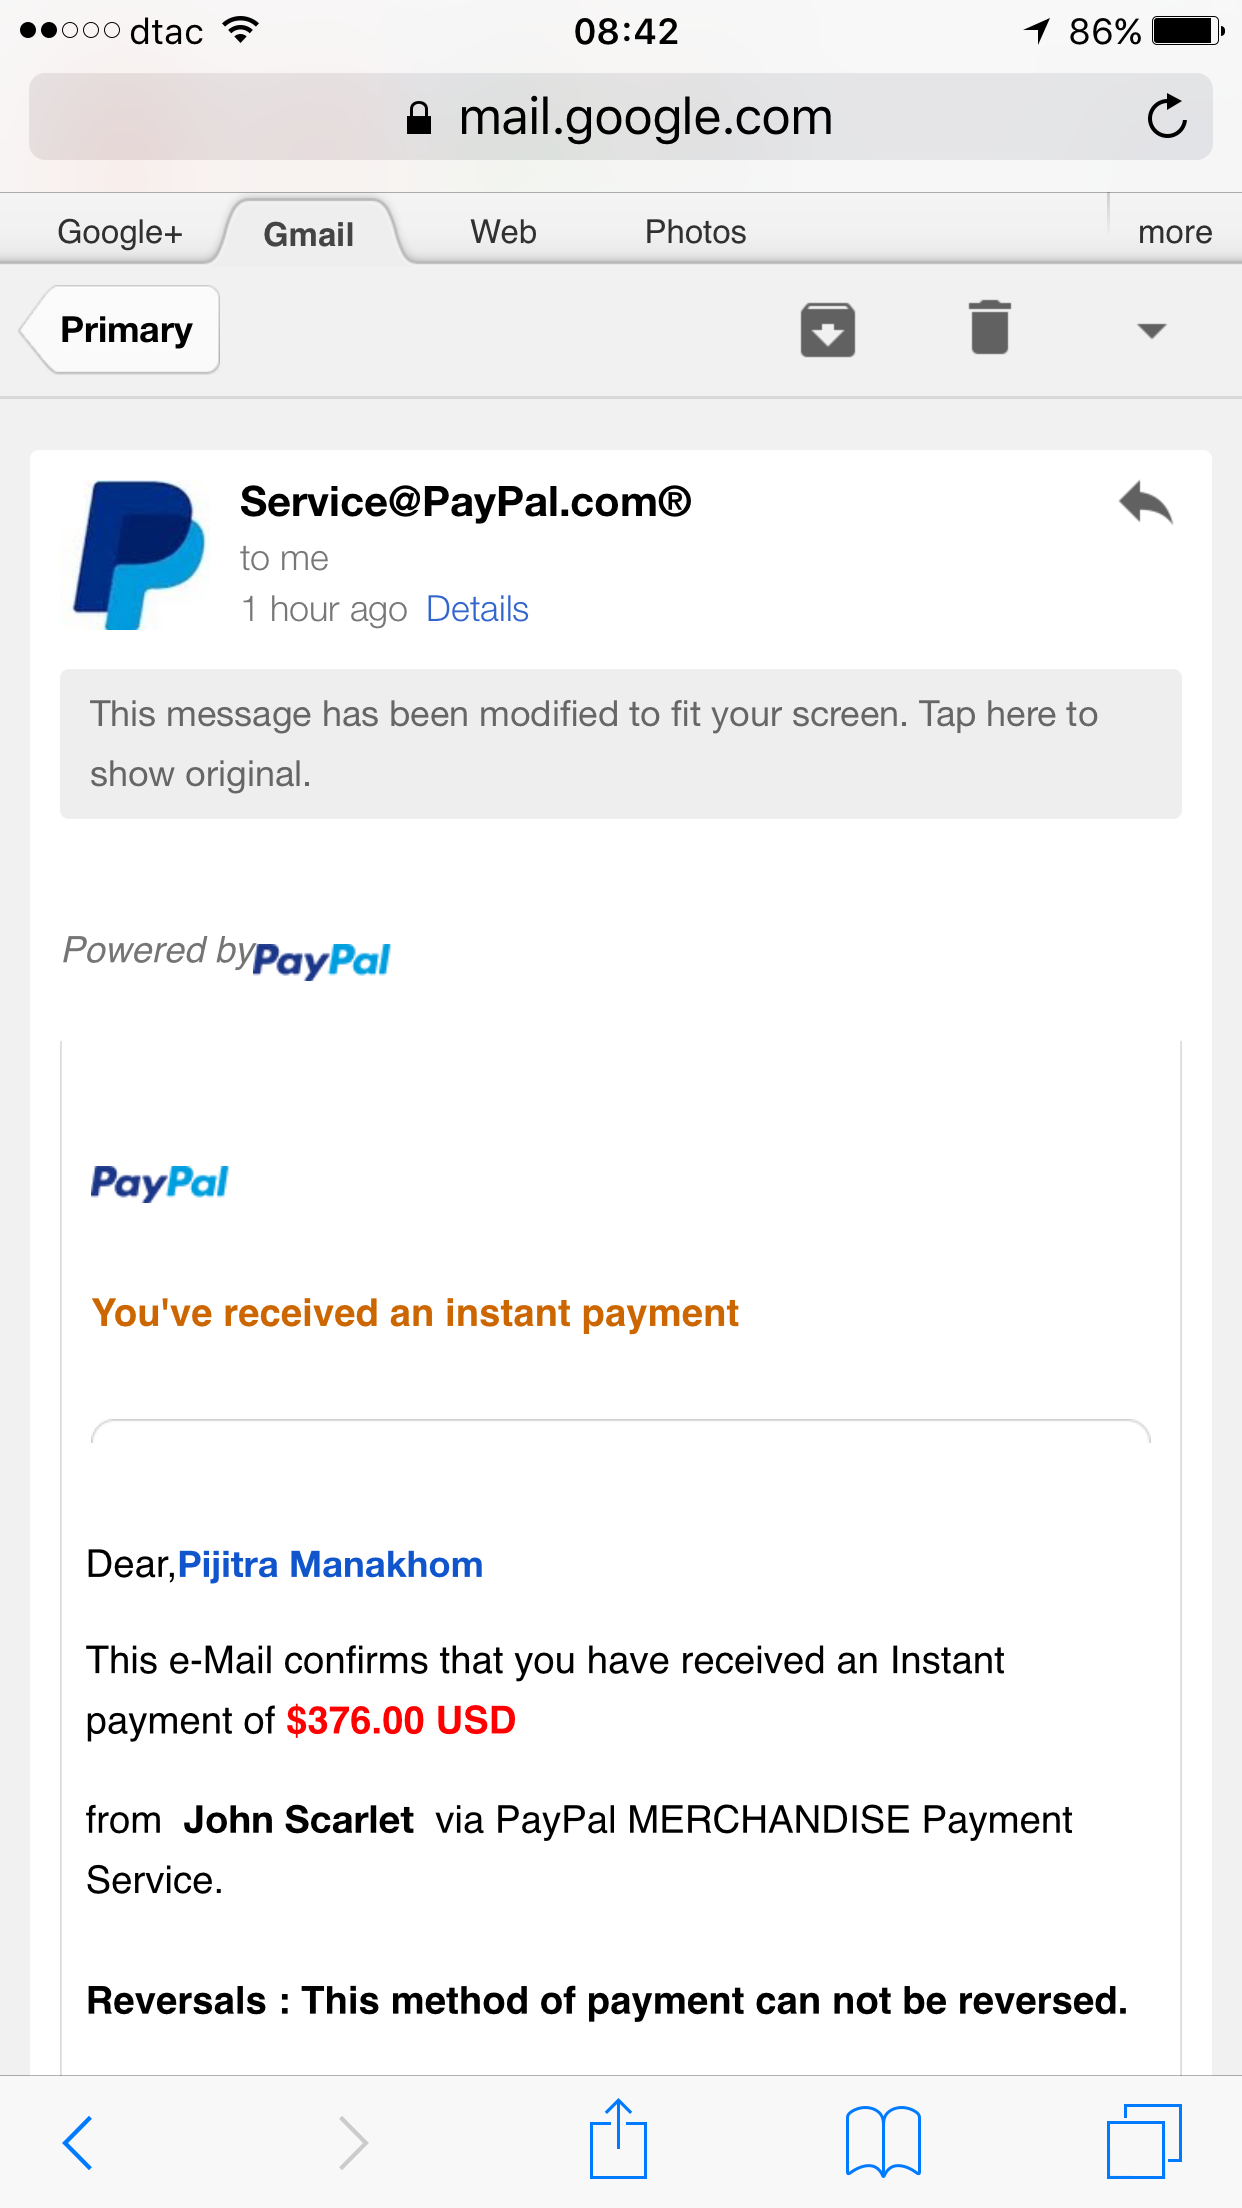 ใครชำนาญการซื้อ-ขาย ใน Paypal ช่วยเราด้วยค่ะ T_T - Pantip